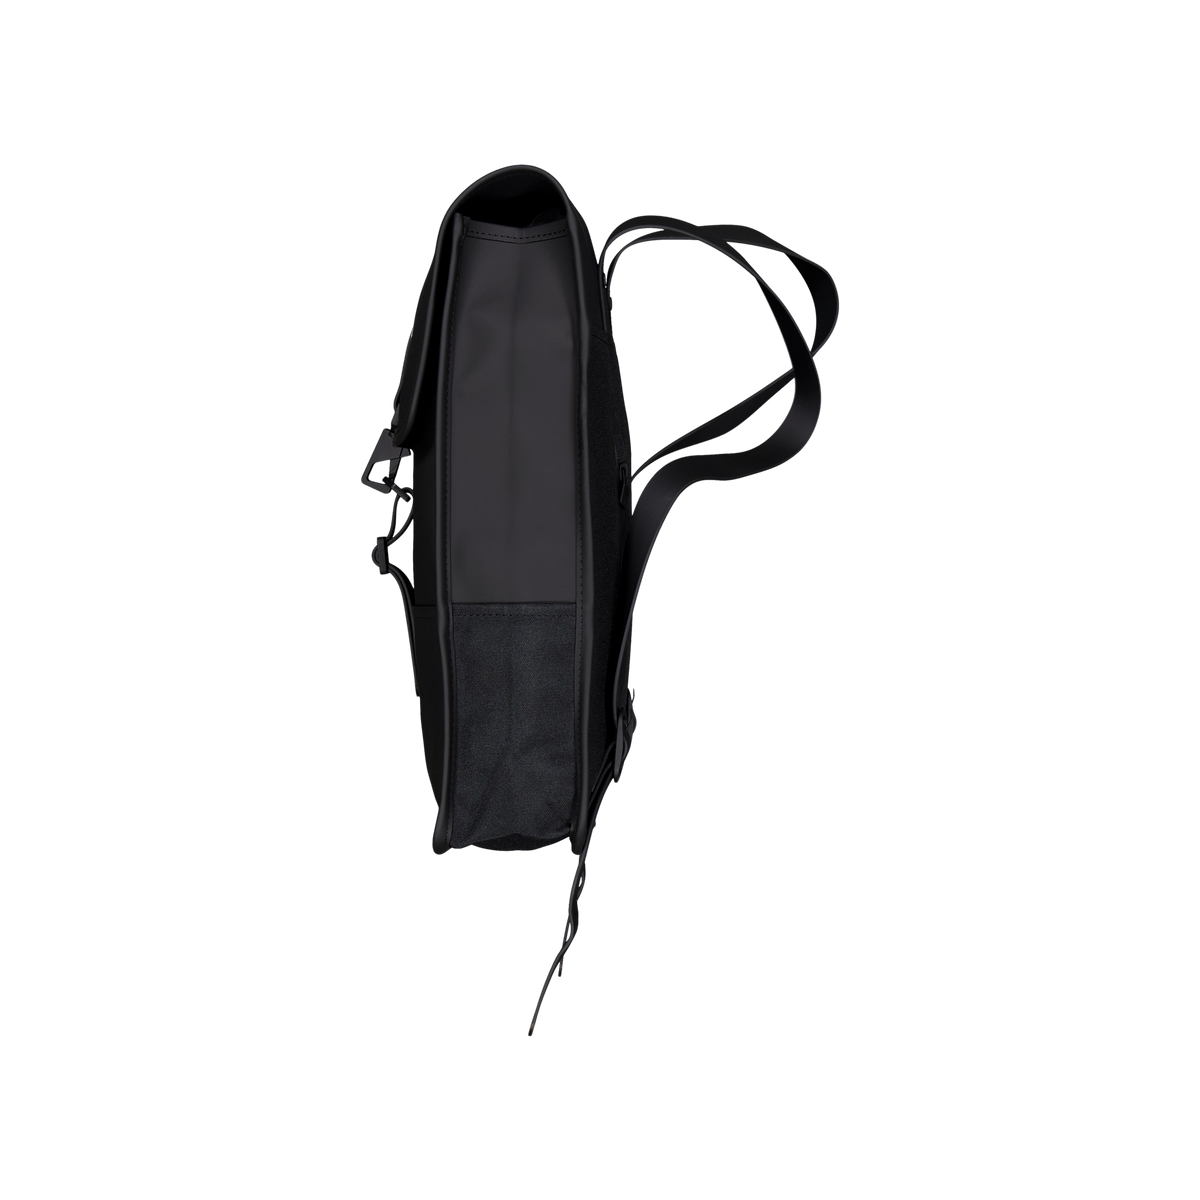 Backpack Mini W3 01 Black